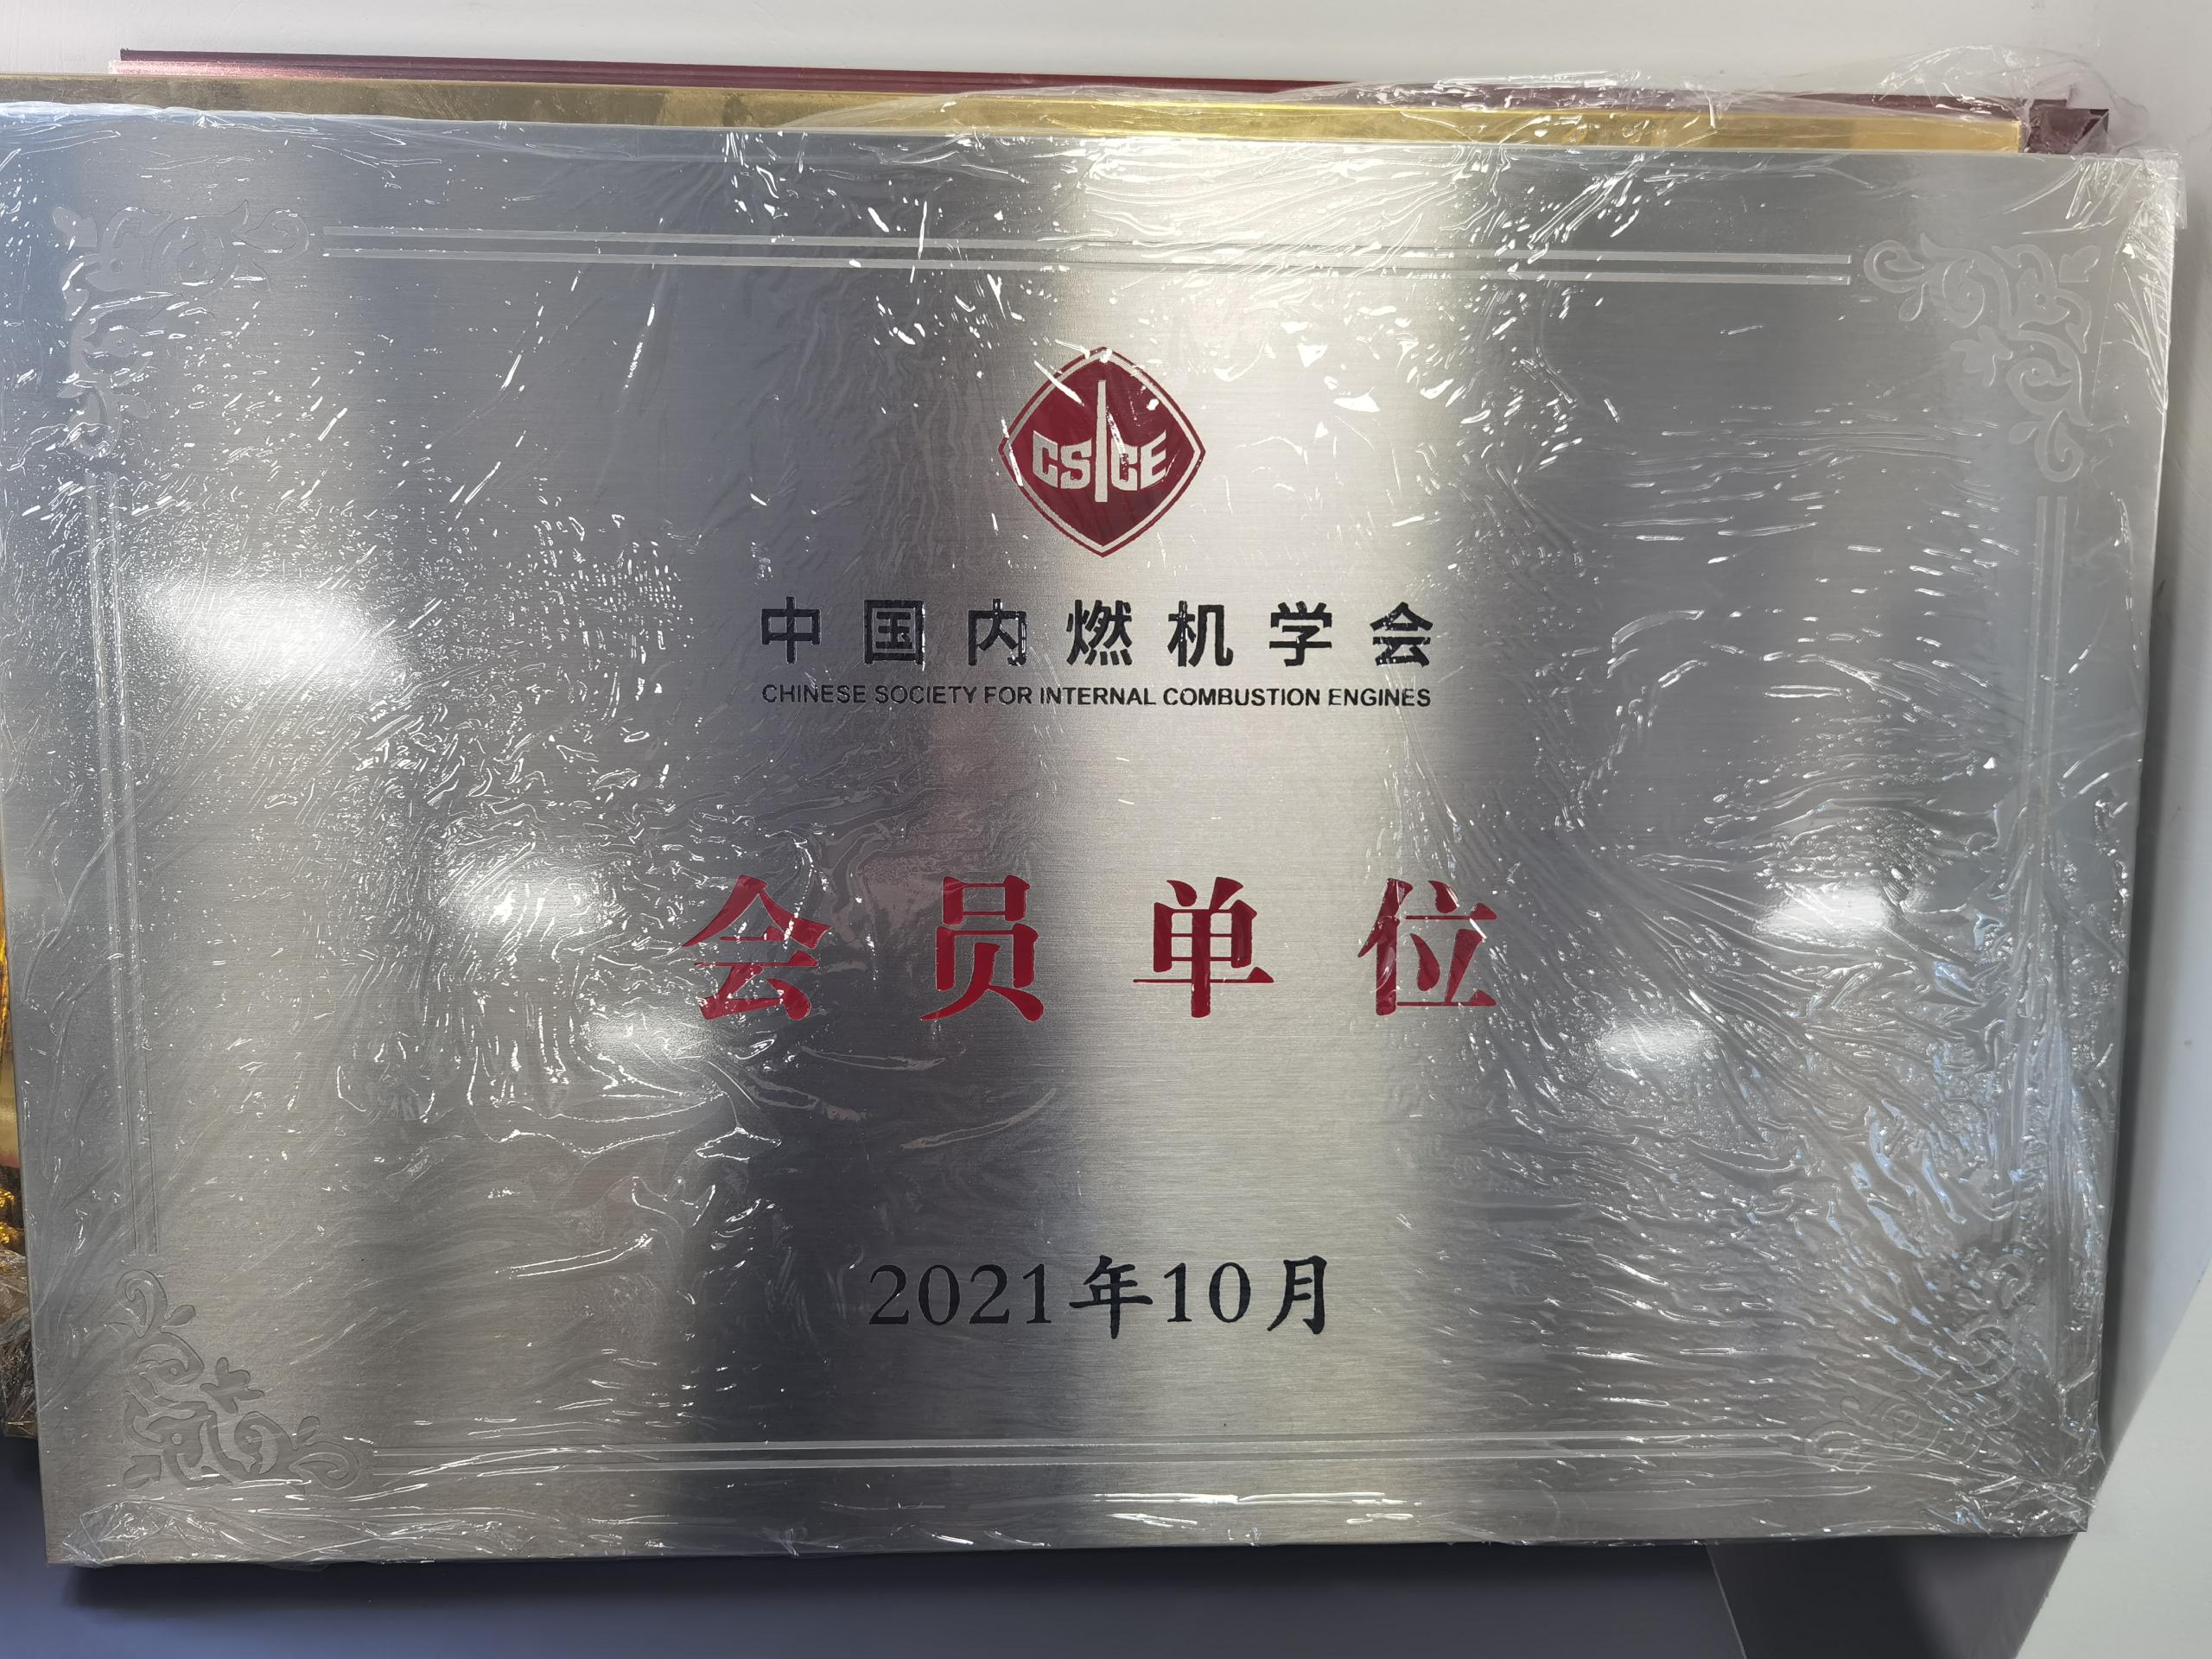 中國內燃機學會會員單位